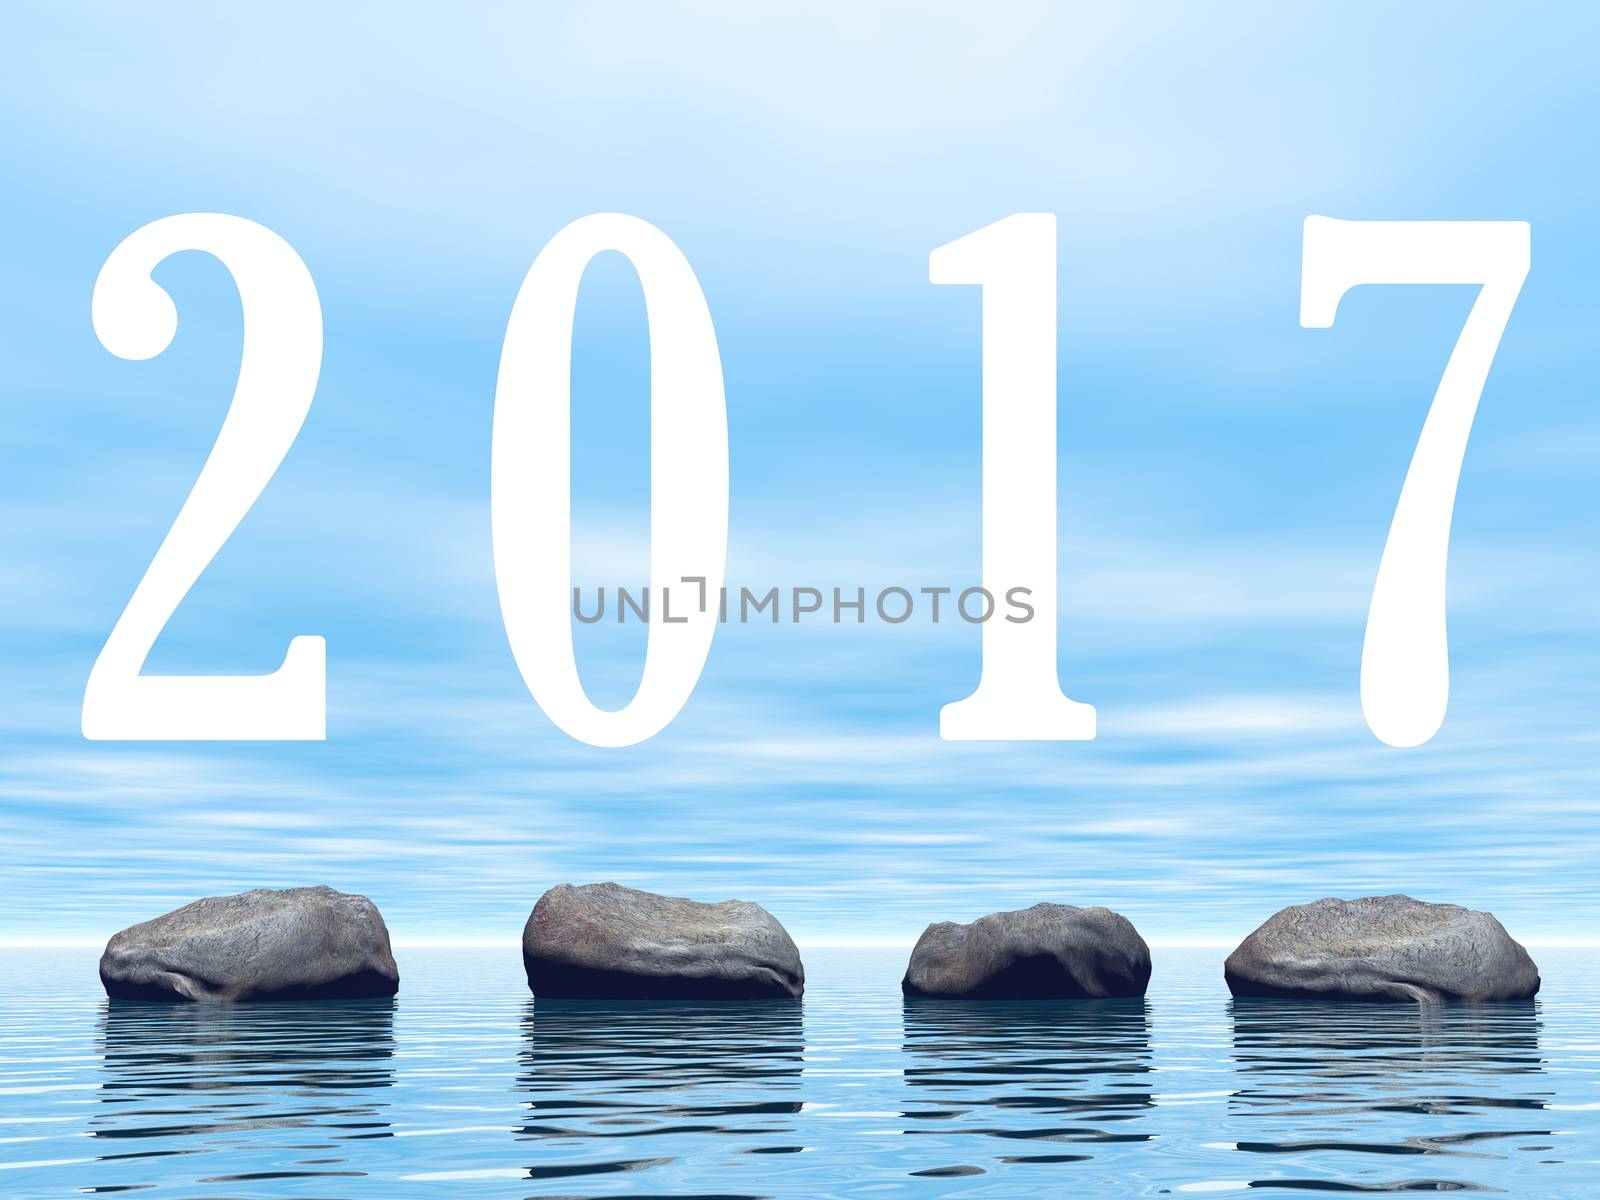 Zen stones upon water for 2017 new year - 3D render